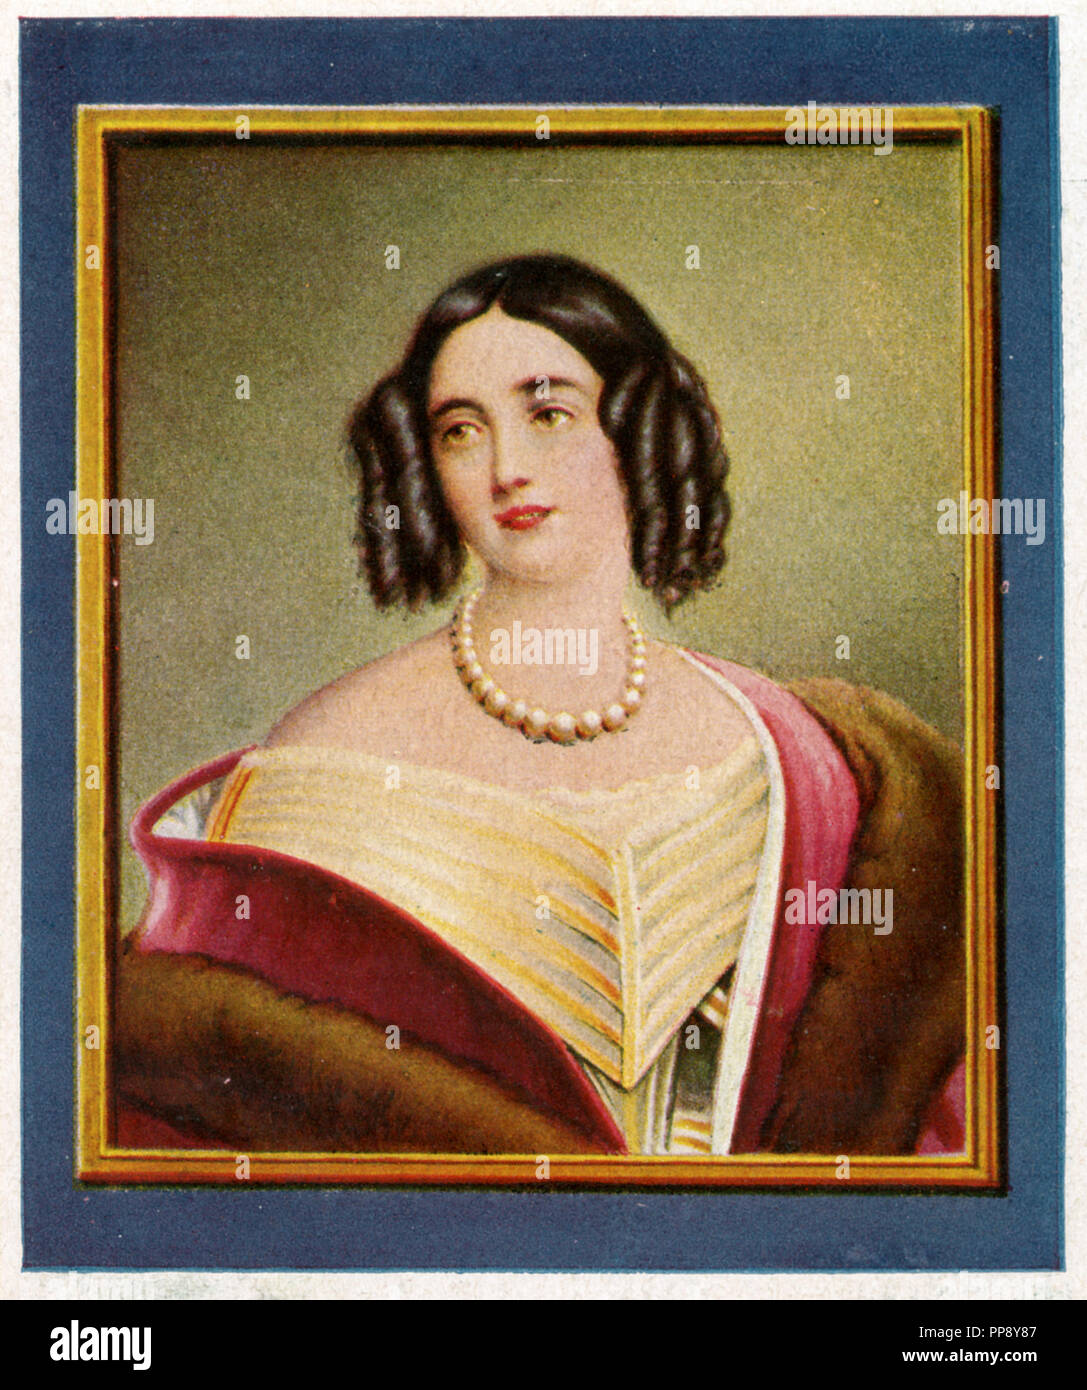 Elisabeth Luise, Königin von Preußen (1801-187)). Nach einer anonymen Miniatur nach dem Gemälde von Joseph Stieler in einer Sammlung Bilderbuch von 1933, Stockfoto